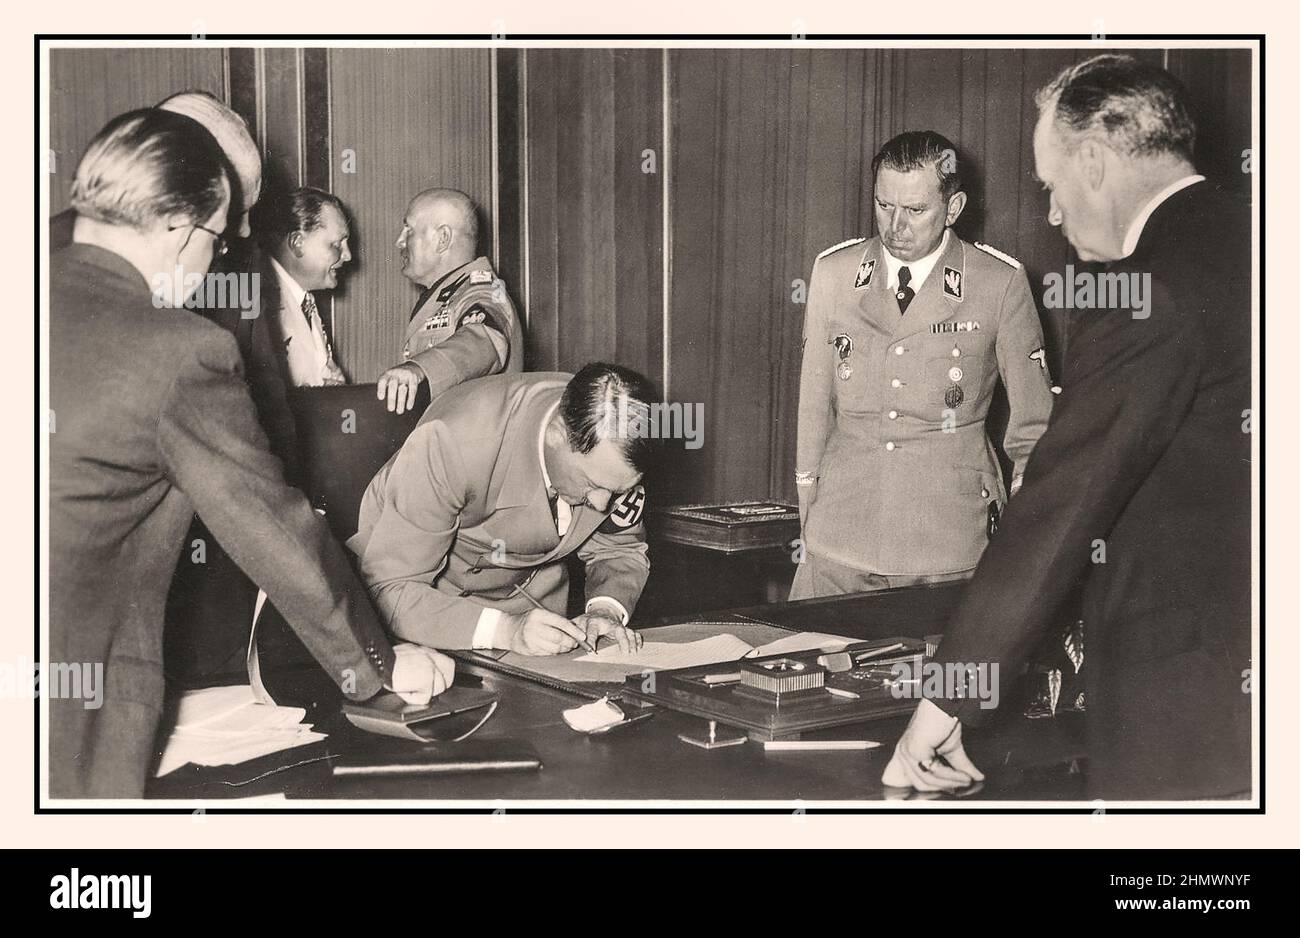 1938, Adolf Hitler signant l'Accord de Munich 30th septembre 1938 'Hitler signe l'Accord de Munich', en arrière-plan le chef du faciste italien Mussolini et Goering chef de la Luftwaffe allemande en conversation l'Accord de Munich était un accord conclu à Munich le 30 septembre 1938, par l'Allemagne, le Royaume-Uni, la France, Et en Italie. Il a fourni "la cession à l'Allemagne du territoire allemand de Sudeten" de la Tchécoslovaquie, Banque D'Images